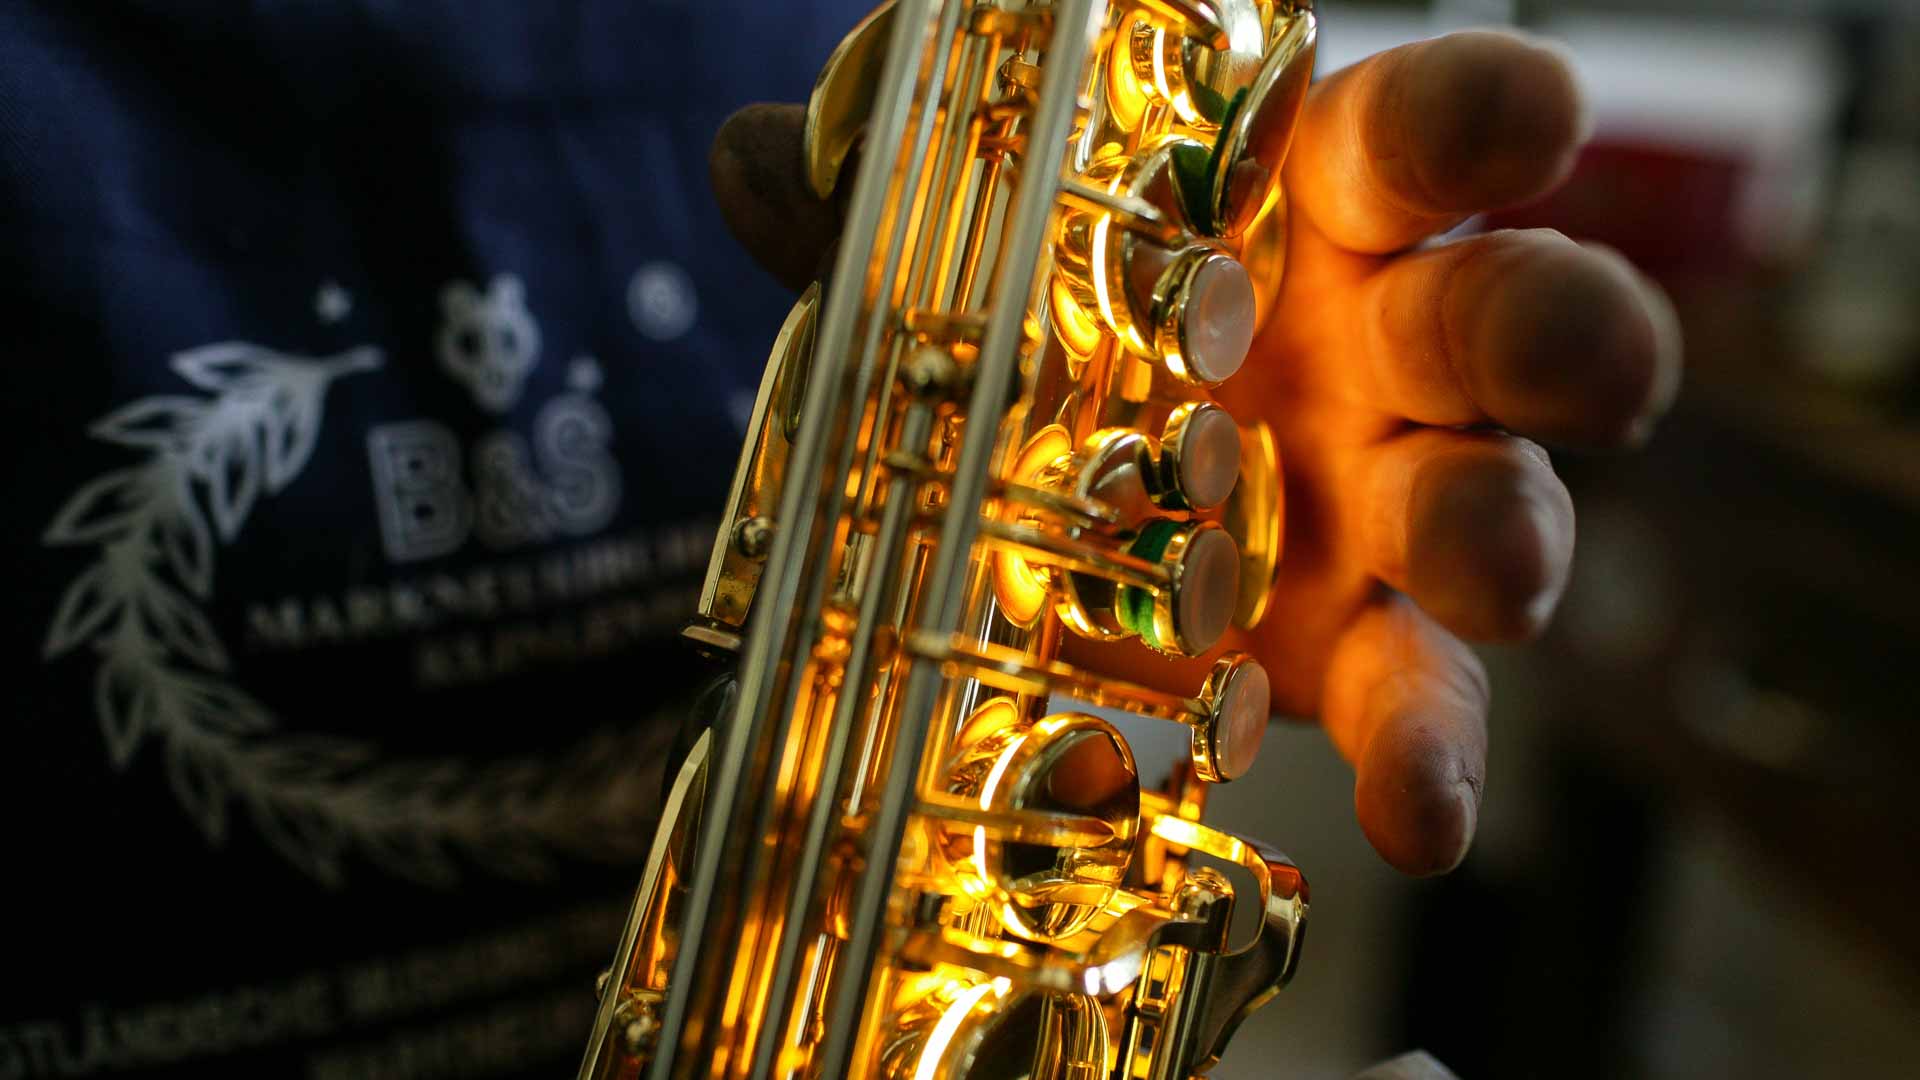 VMI vogtländische Musikinstrumenten Industrie, herstellung von Blechblasinstrumenten und saxophonen und klarinetten